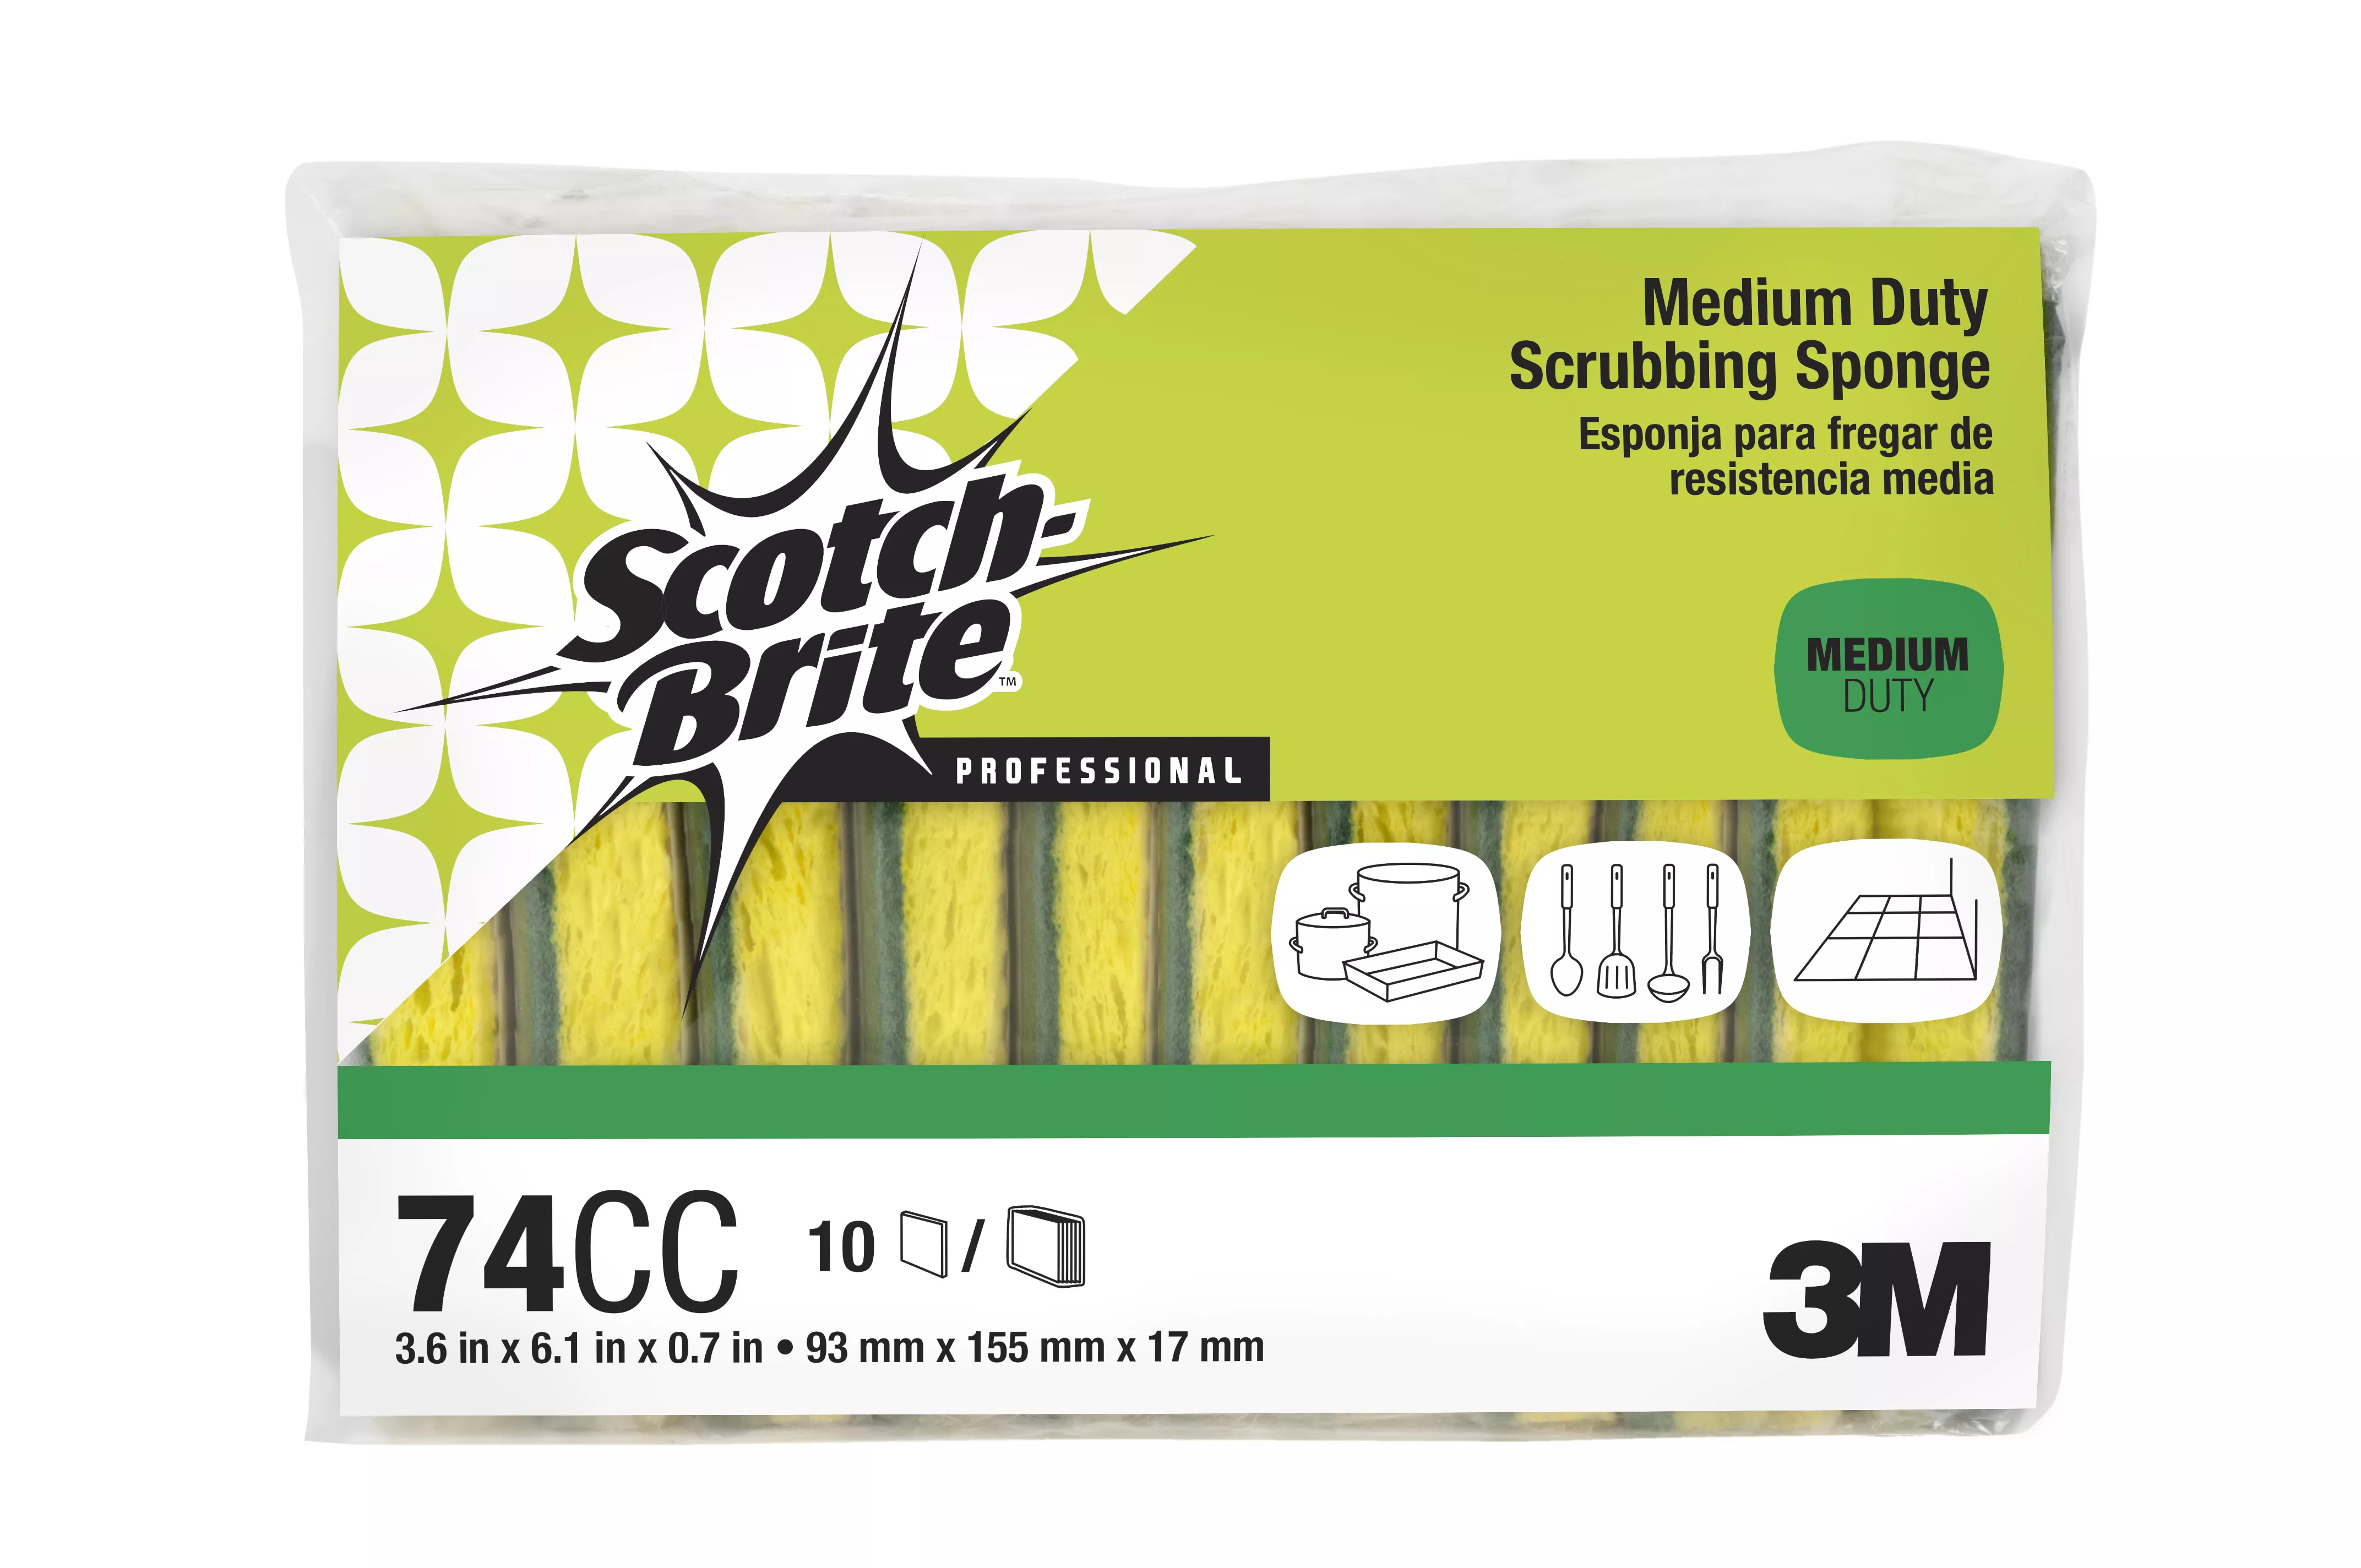 Product Number 74CC | Scotch-Brite™ Medium Duty Scrubbing Sponge 74CC